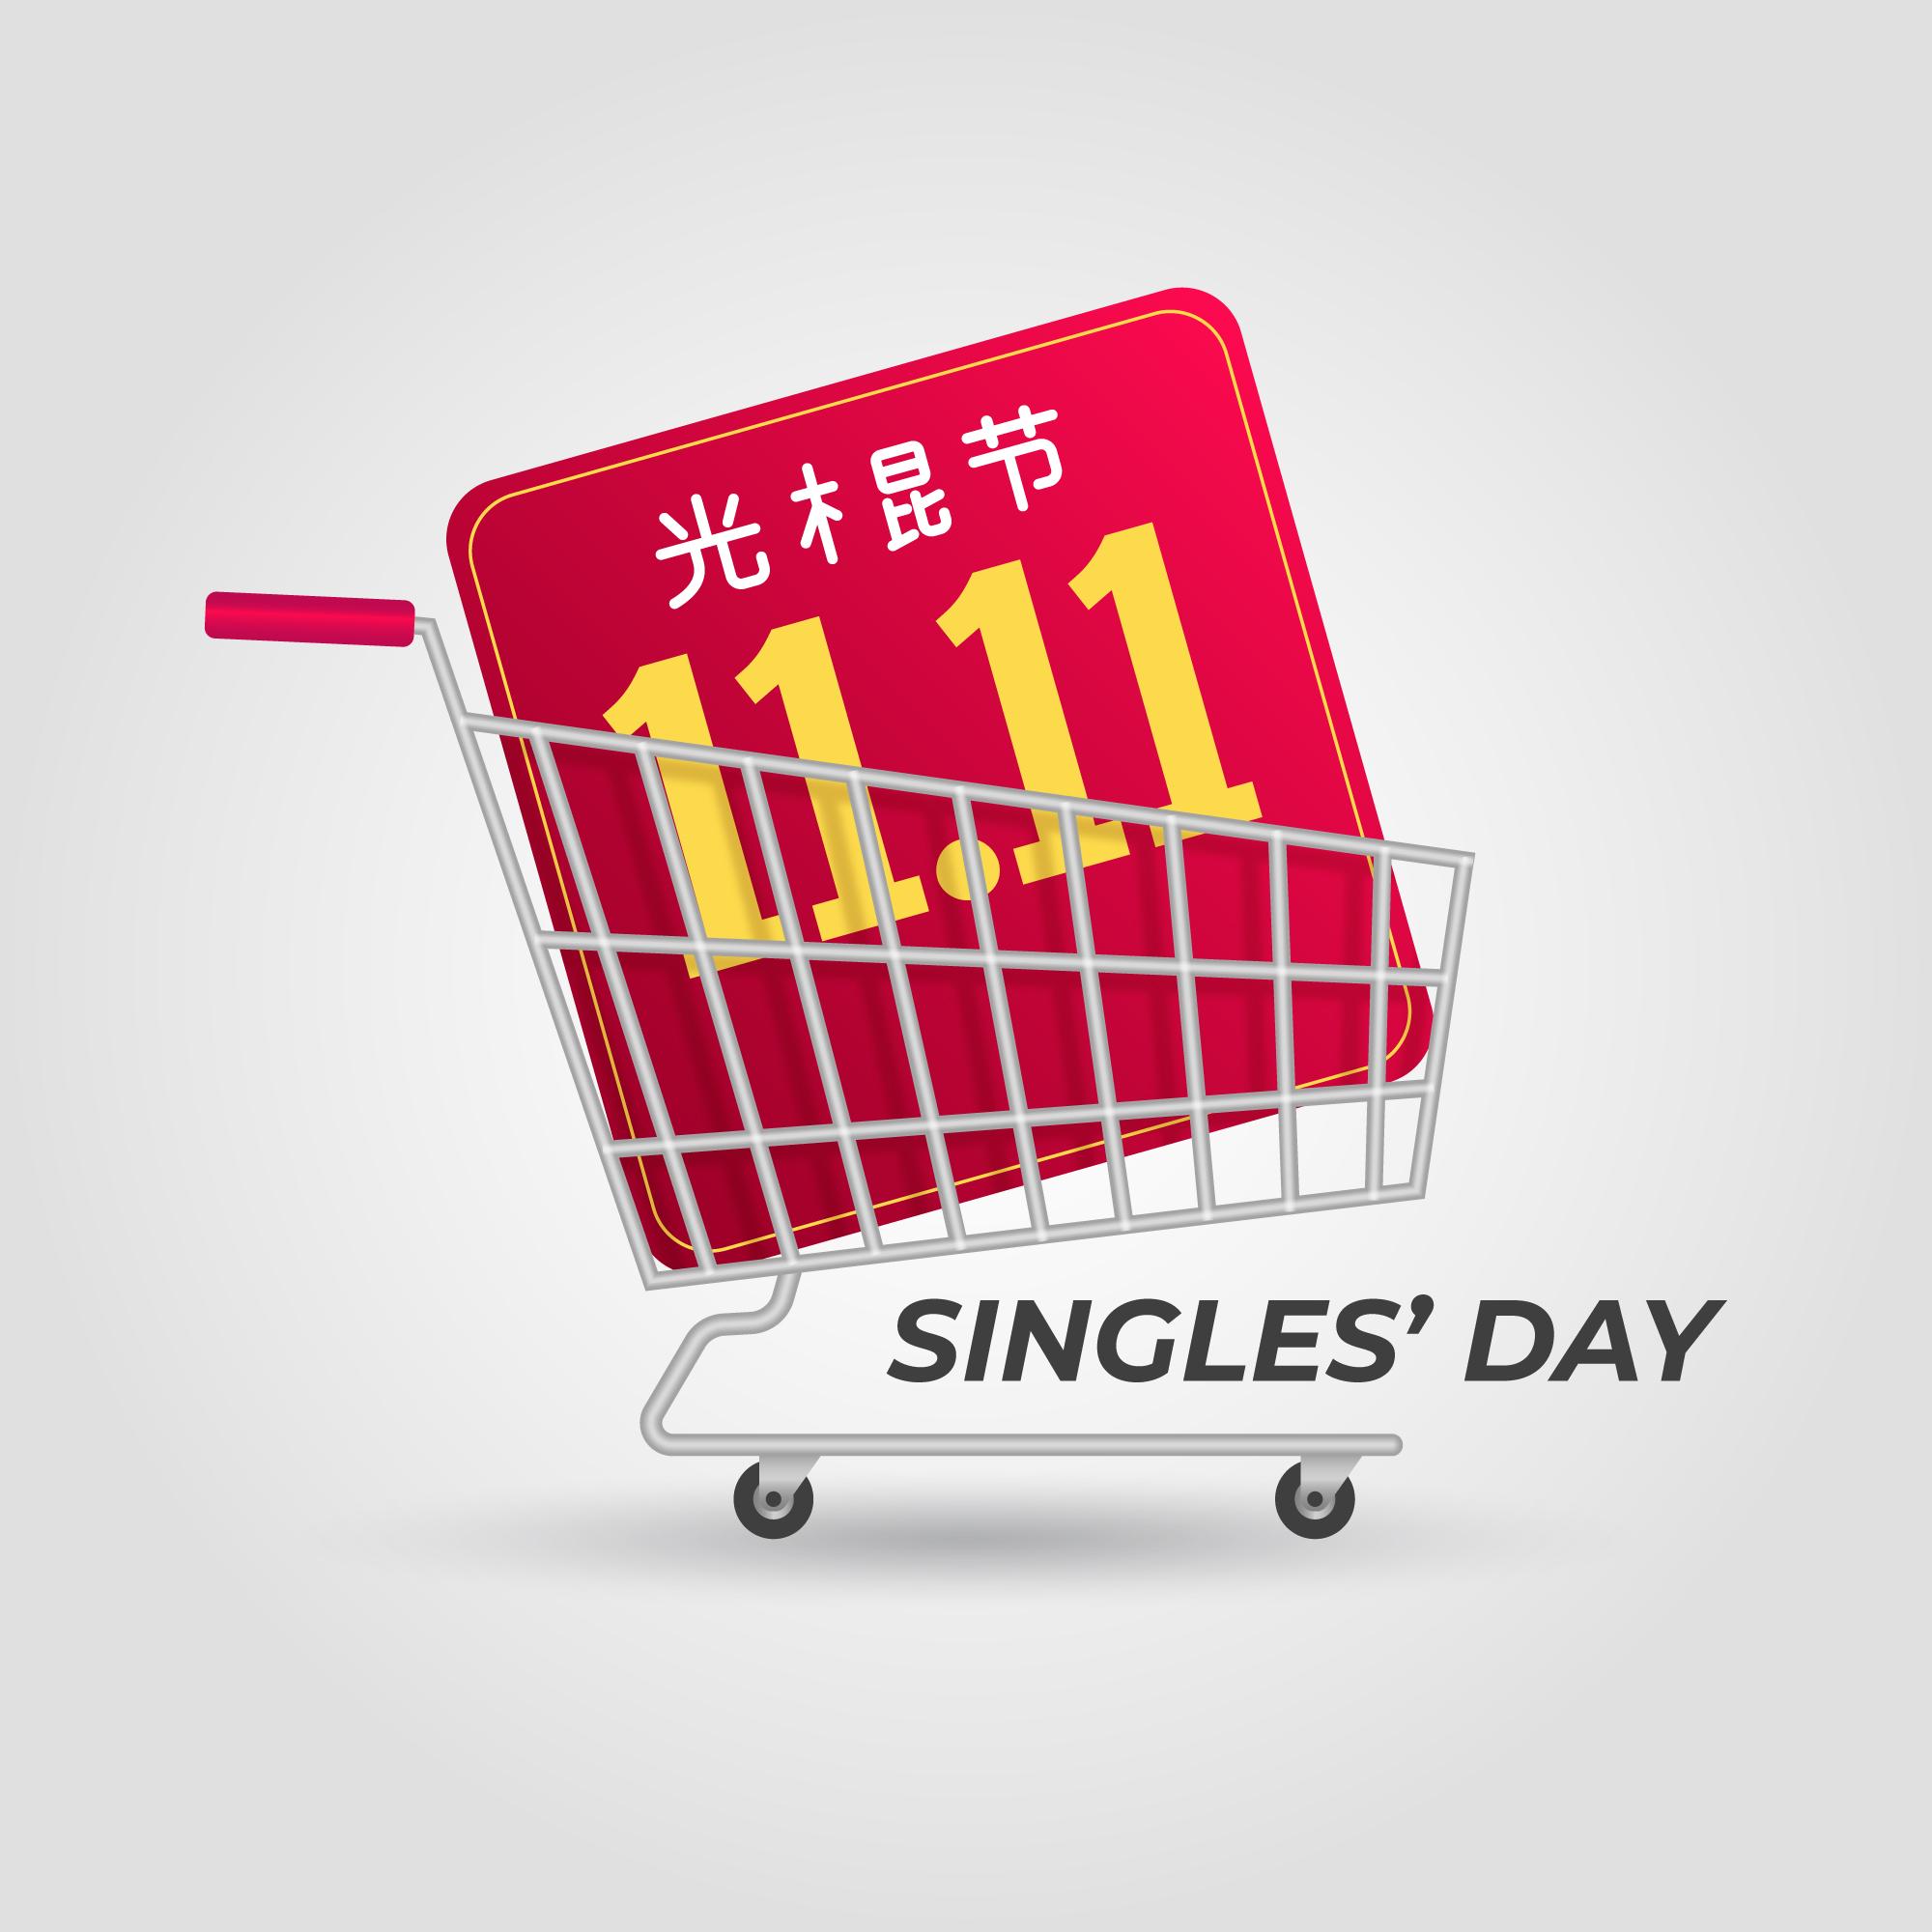 现实的双十一光棍节/电商购物节插画realistic-singles-day-illustration